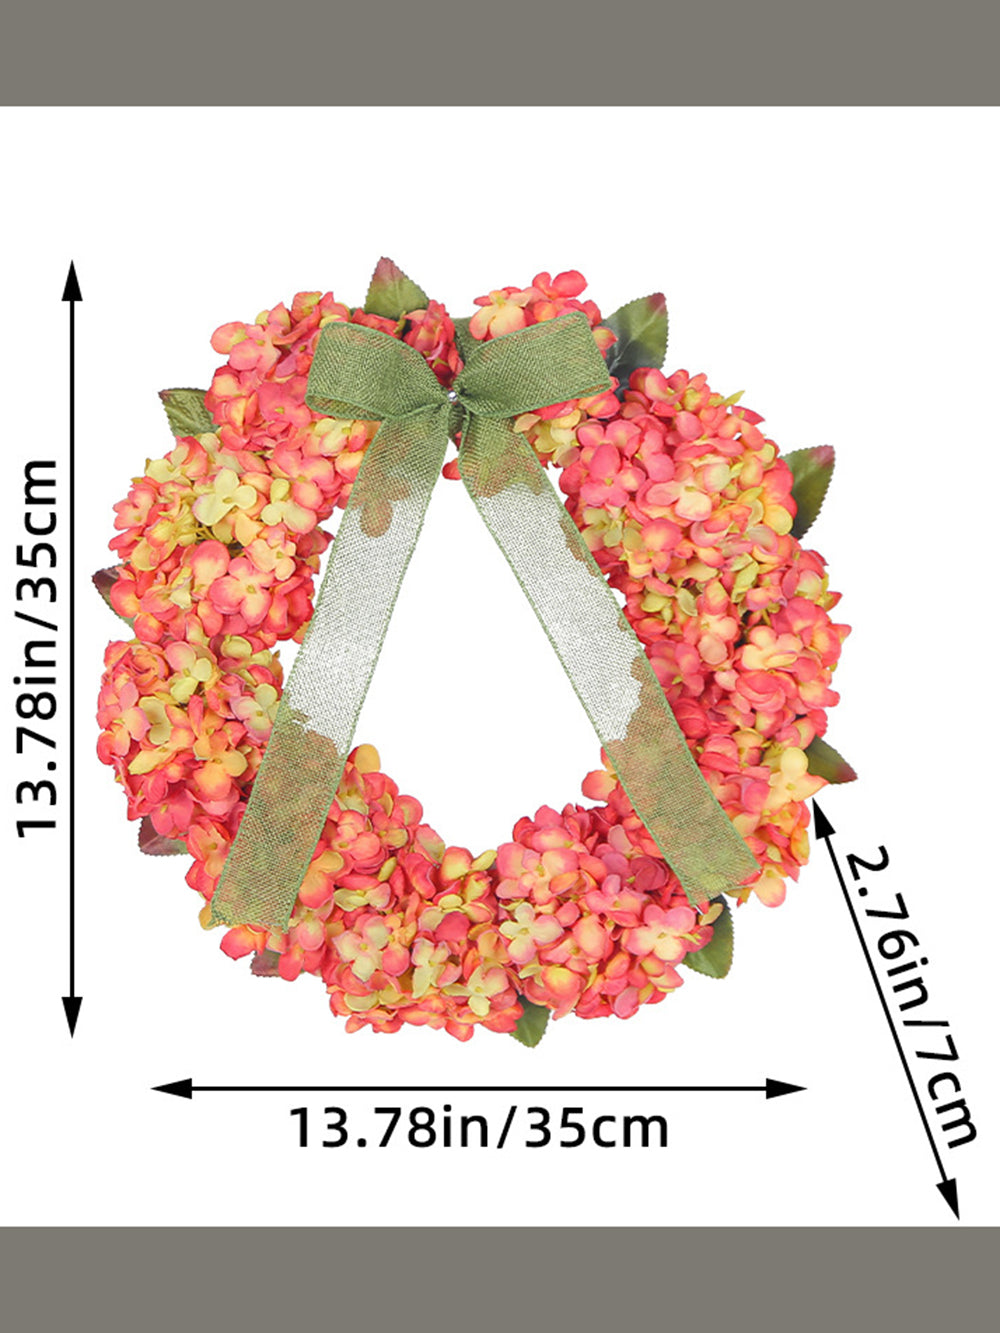 Guirlande d'hortensia festive suspendue à une porte, décoration florale simulée